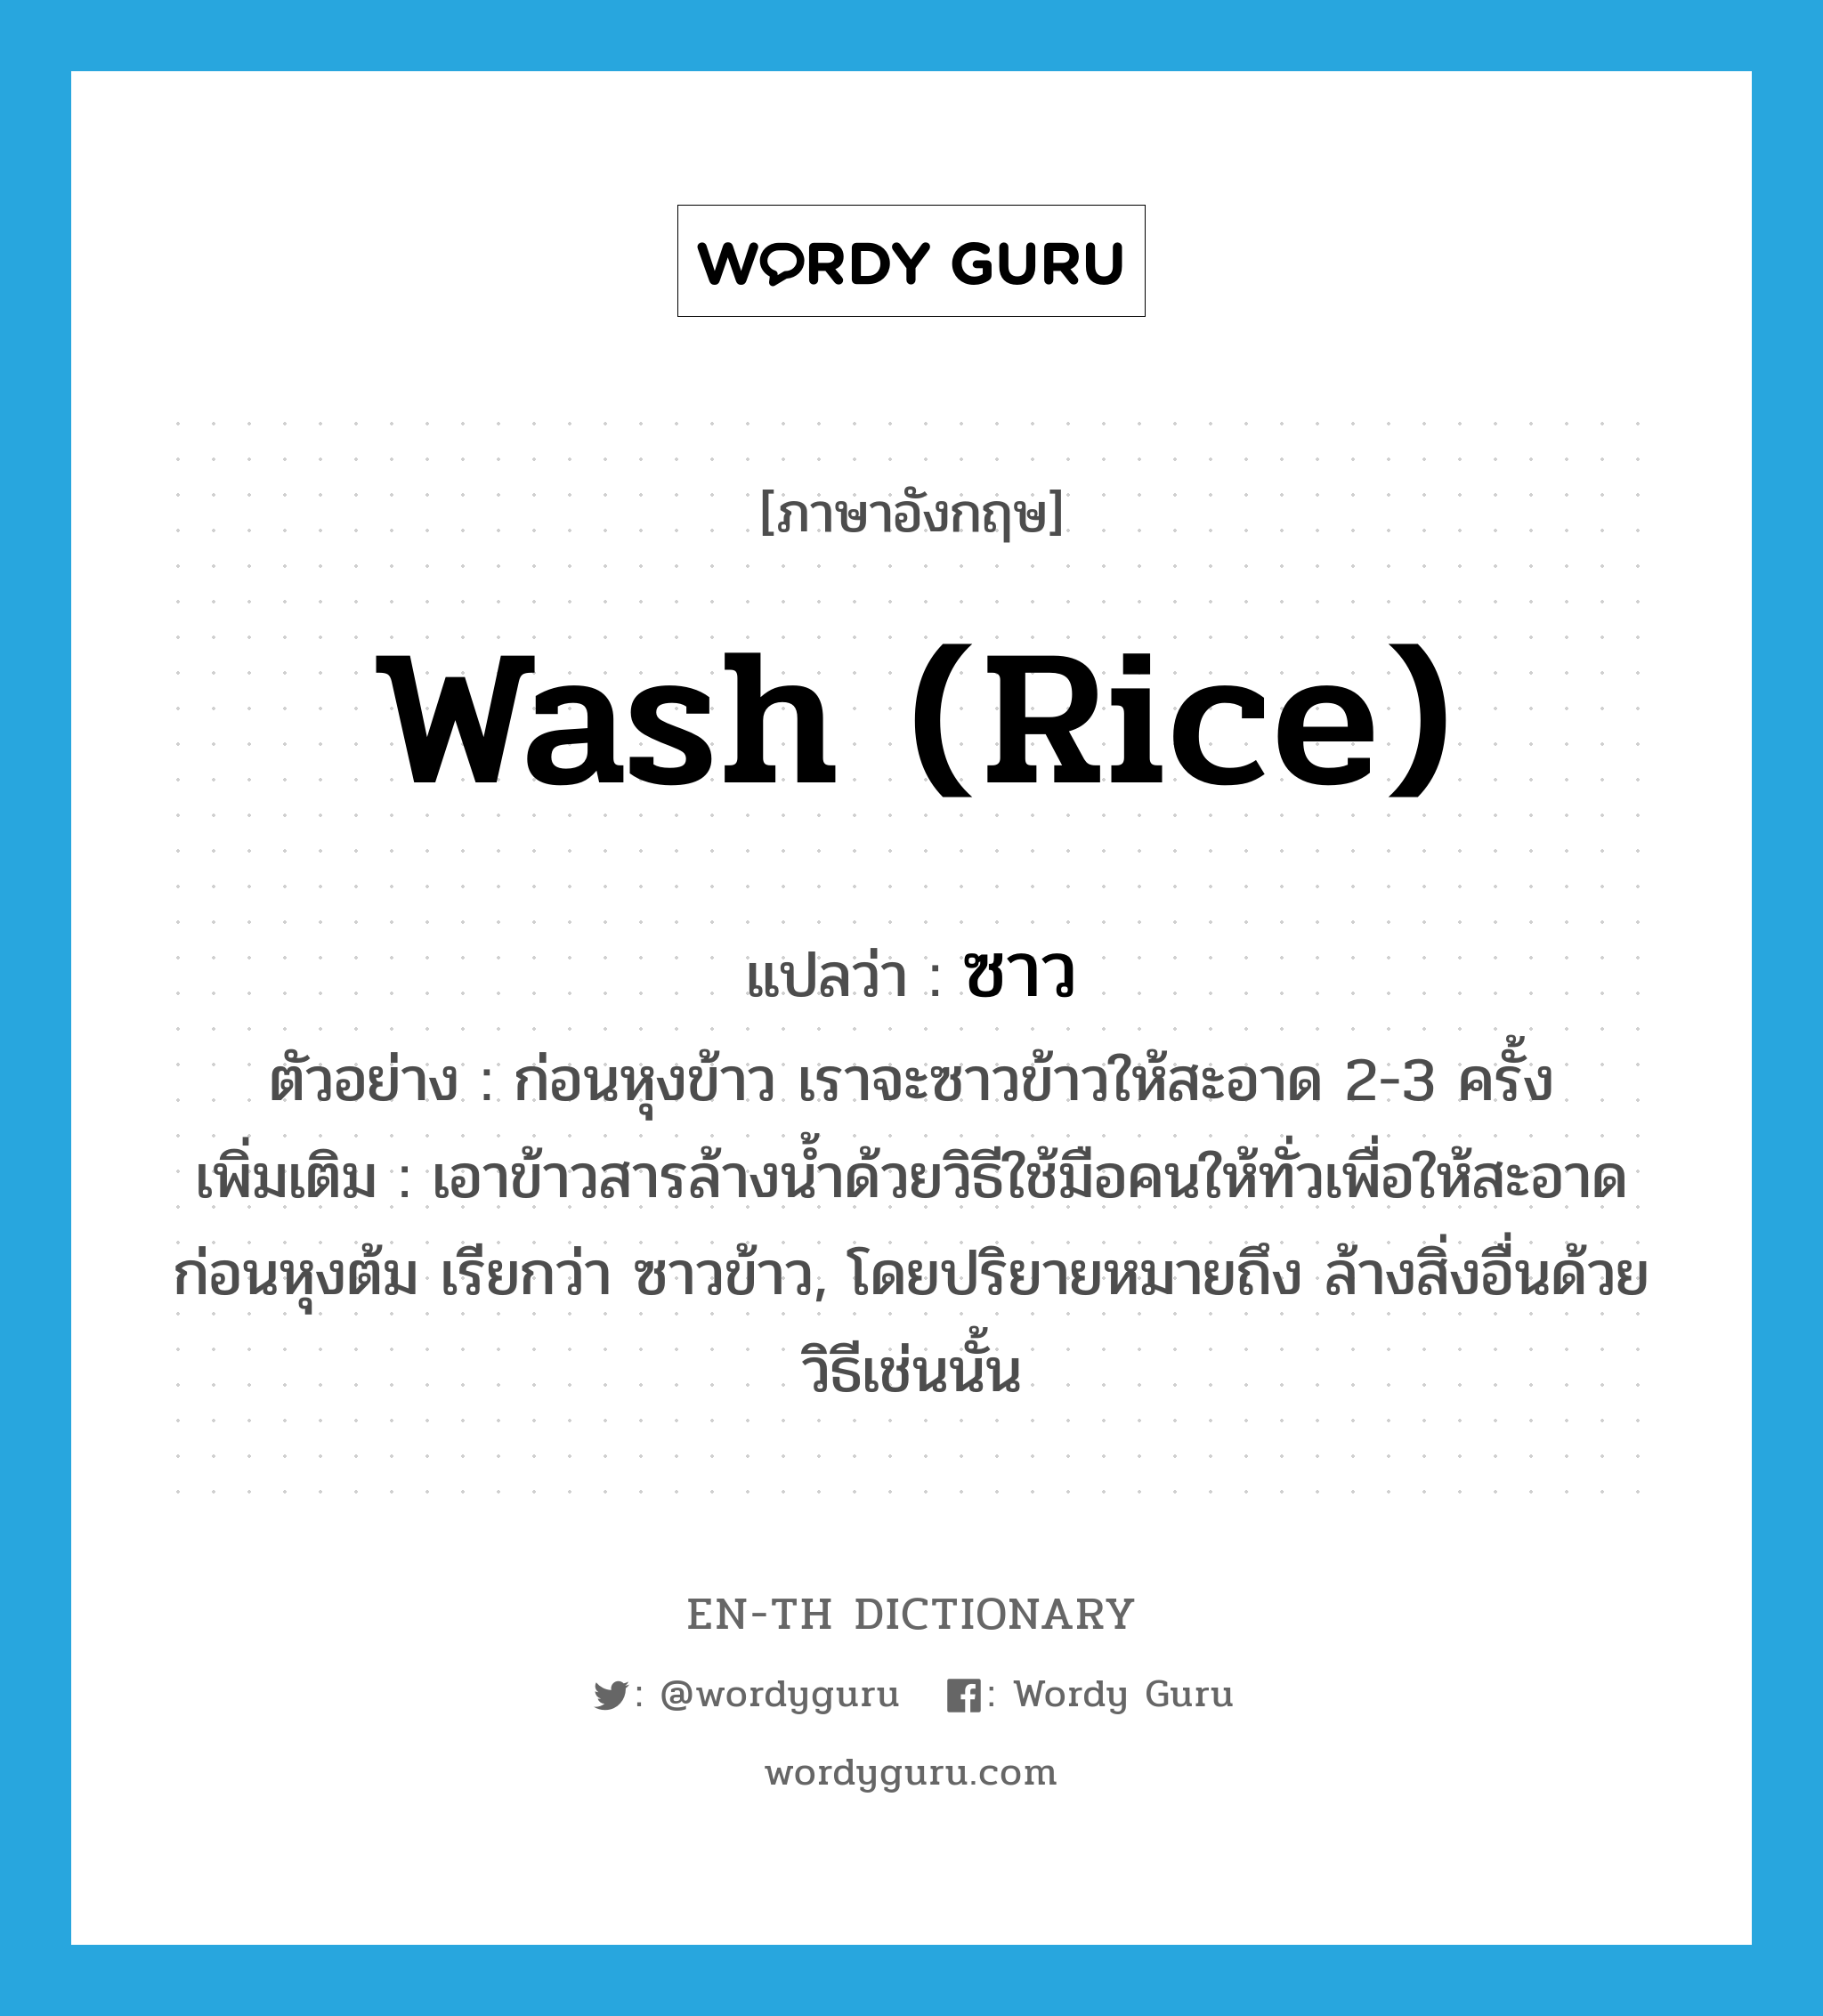 ซาว ภาษาอังกฤษ?, คำศัพท์ภาษาอังกฤษ ซาว แปลว่า wash (rice) ประเภท V ตัวอย่าง ก่อนหุงข้าว เราจะซาวข้าวให้สะอาด 2-3 ครั้ง เพิ่มเติม เอาข้าวสารล้างน้ำด้วยวิธีใช้มือคนให้ทั่วเพื่อให้สะอาดก่อนหุงต้ม เรียกว่า ซาวข้าว, โดยปริยายหมายถึง ล้างสิ่งอื่นด้วยวิธีเช่นนั้น หมวด V